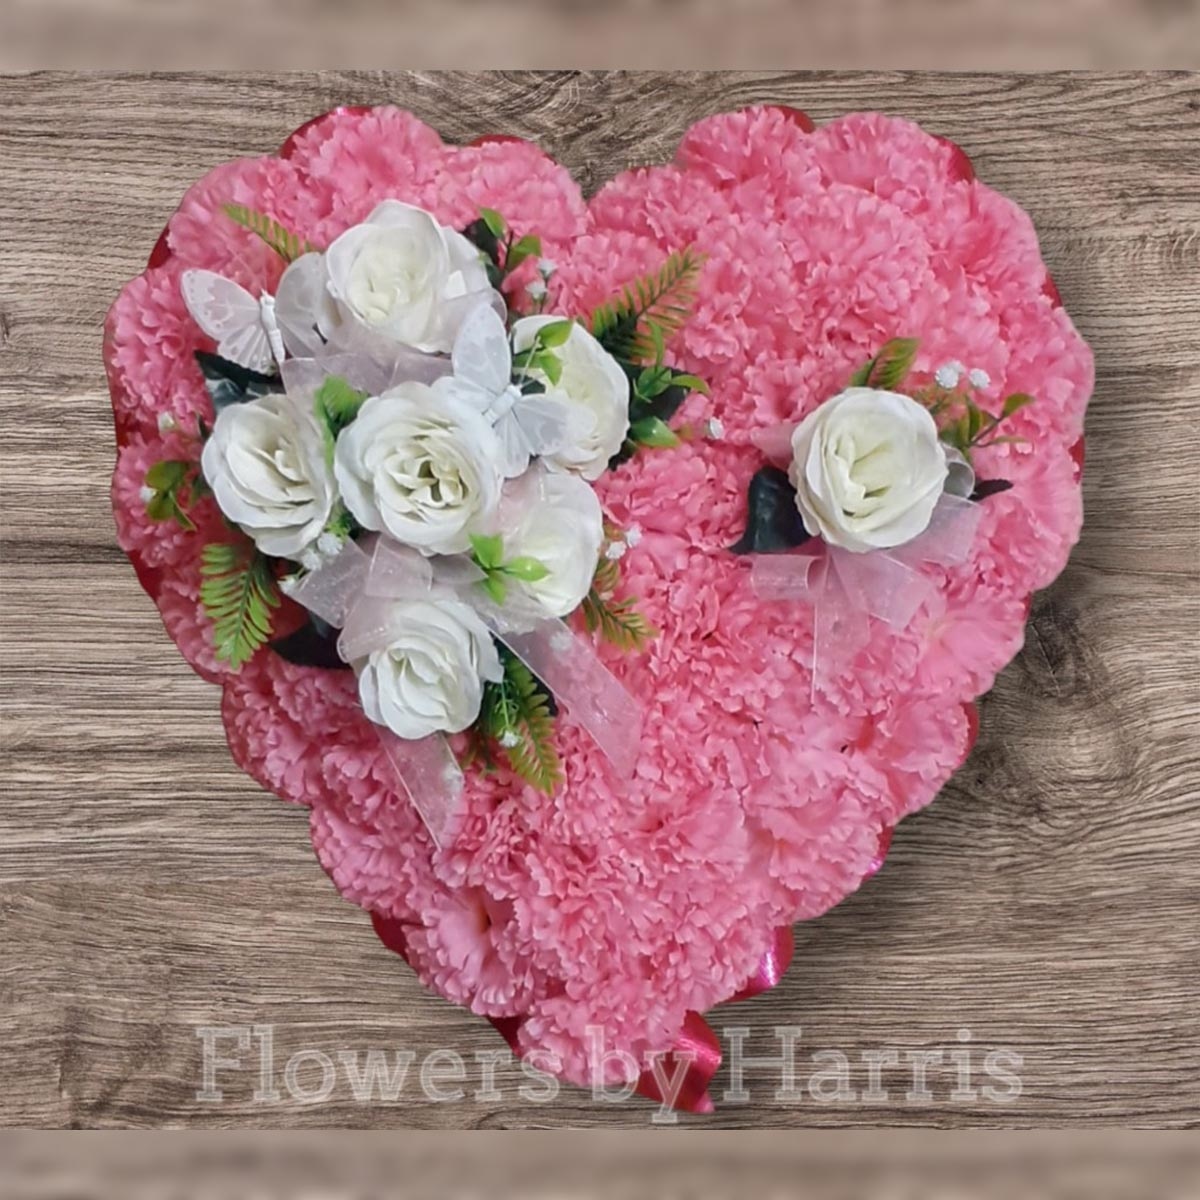 Silk Pink Heart Flower Arrangement